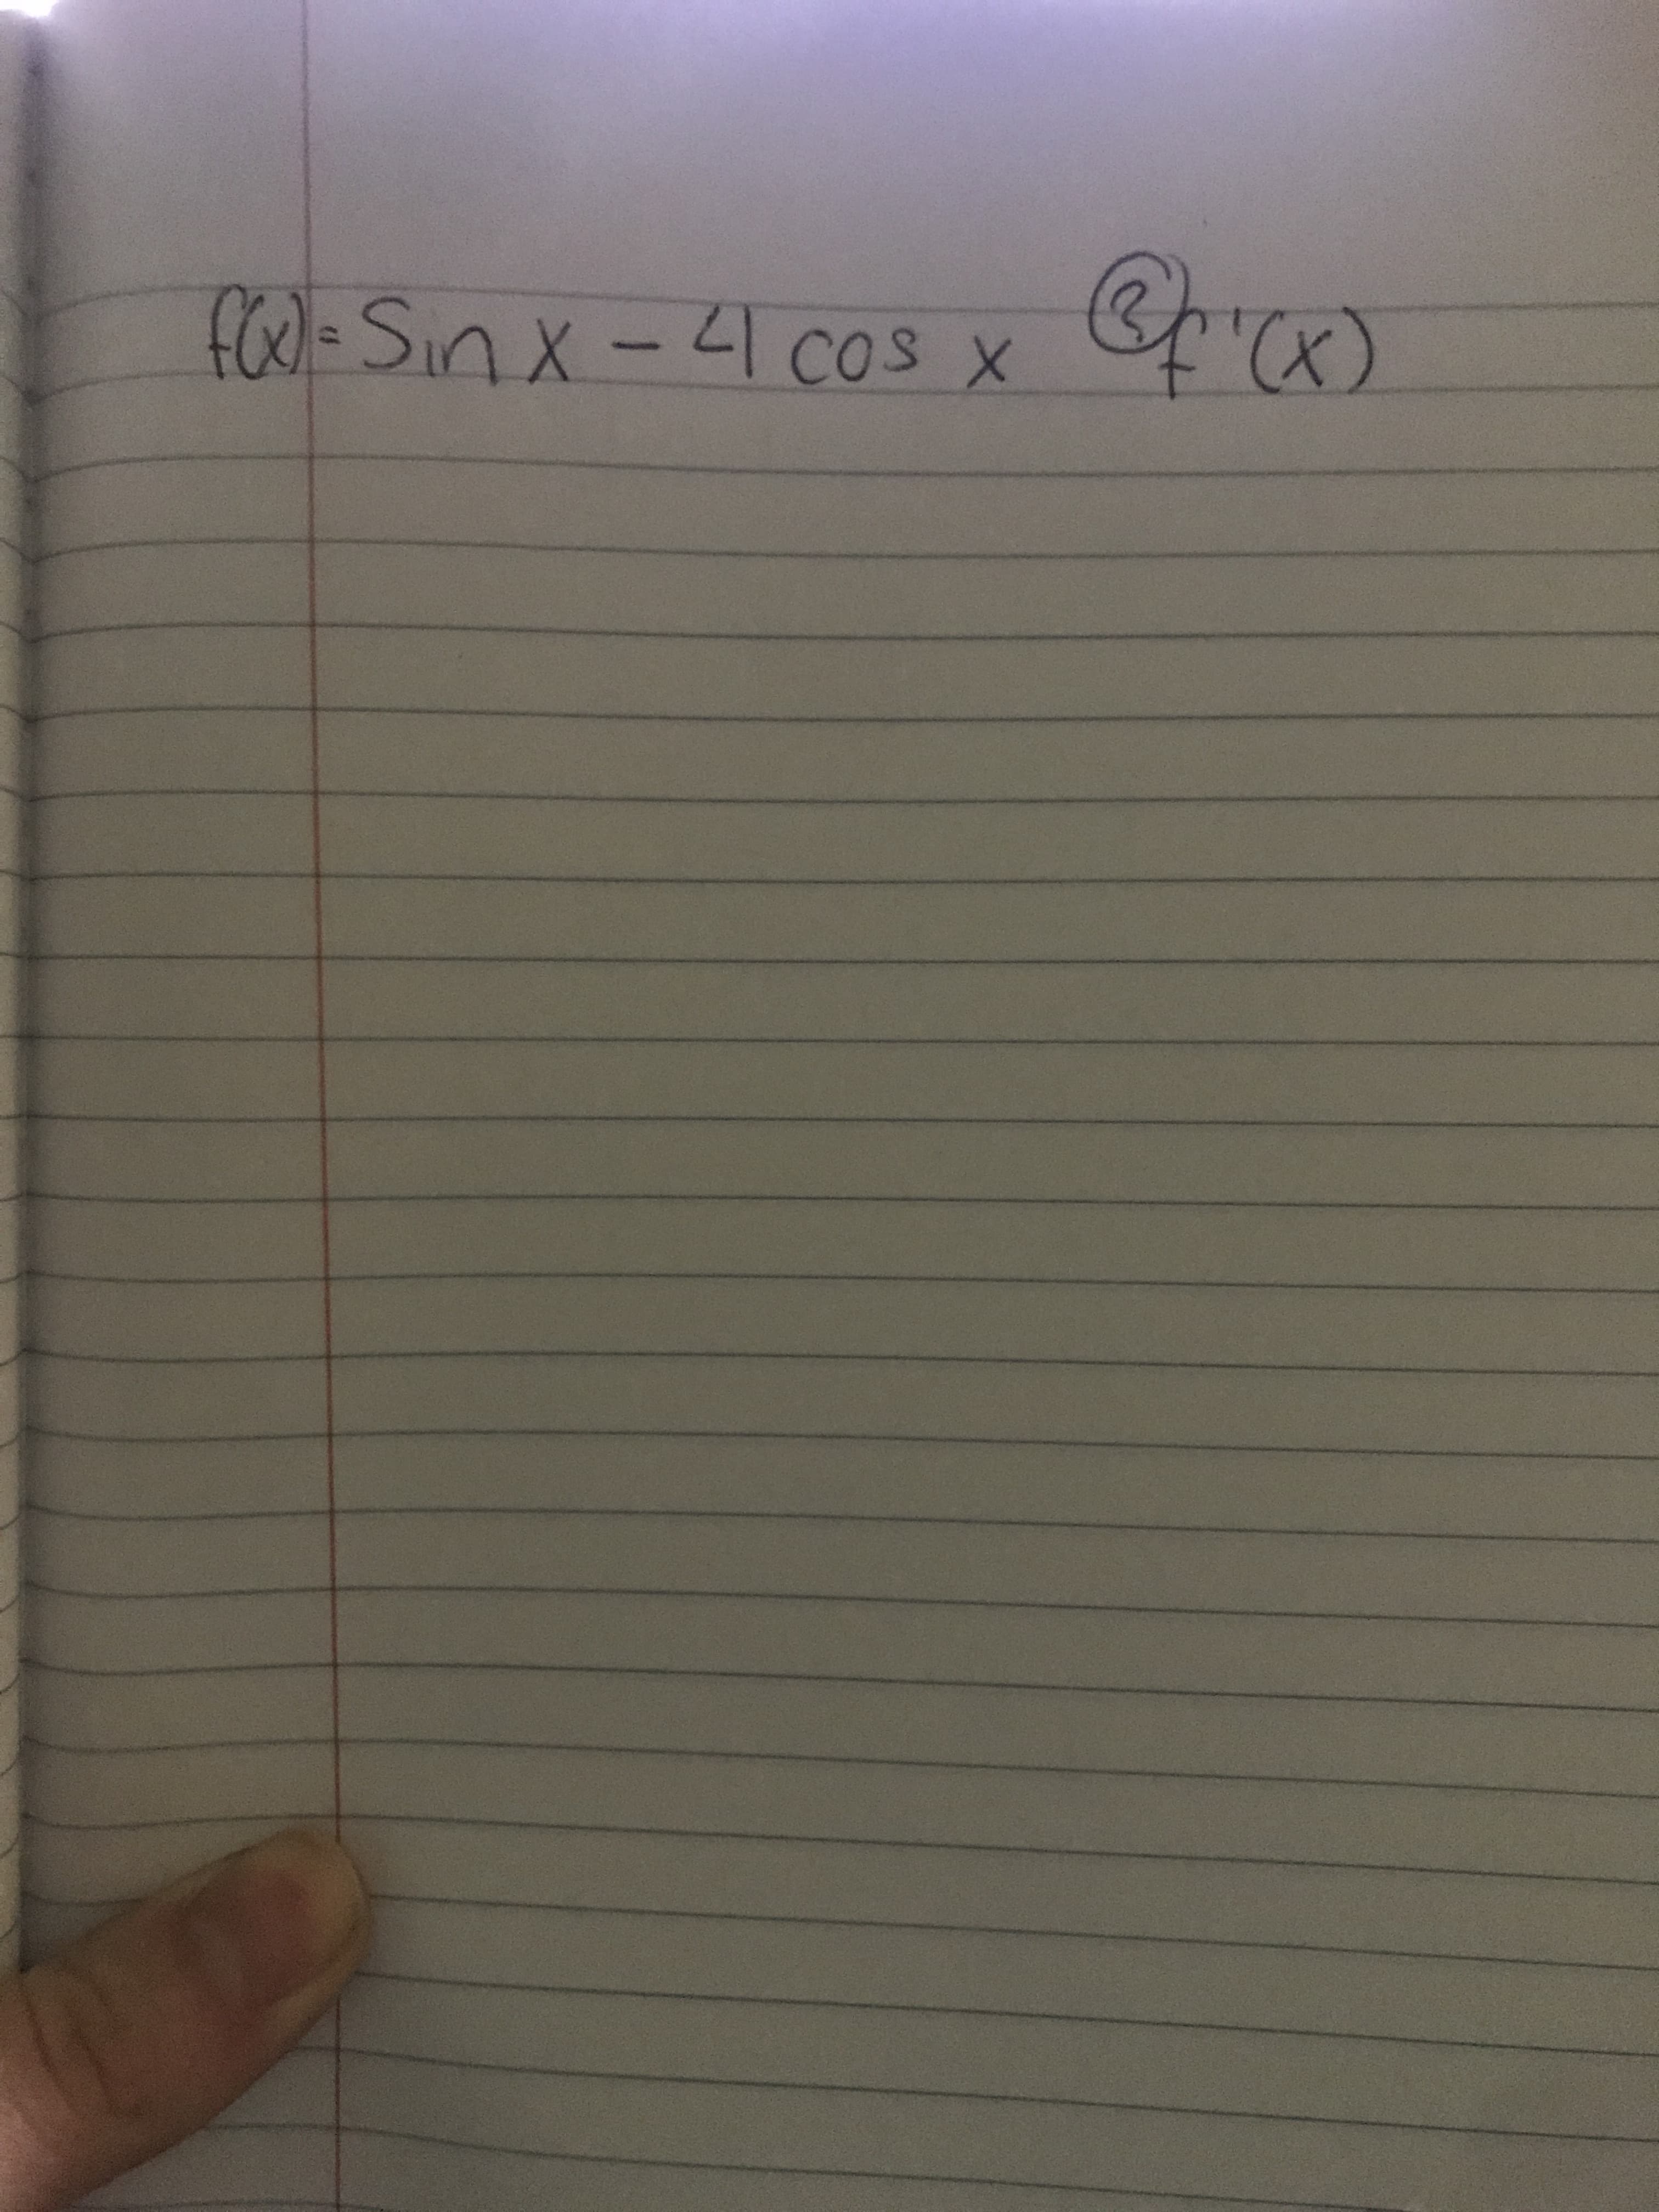 fOo)=Sinx-41 Cos x
1X-1 cos X
(x)
